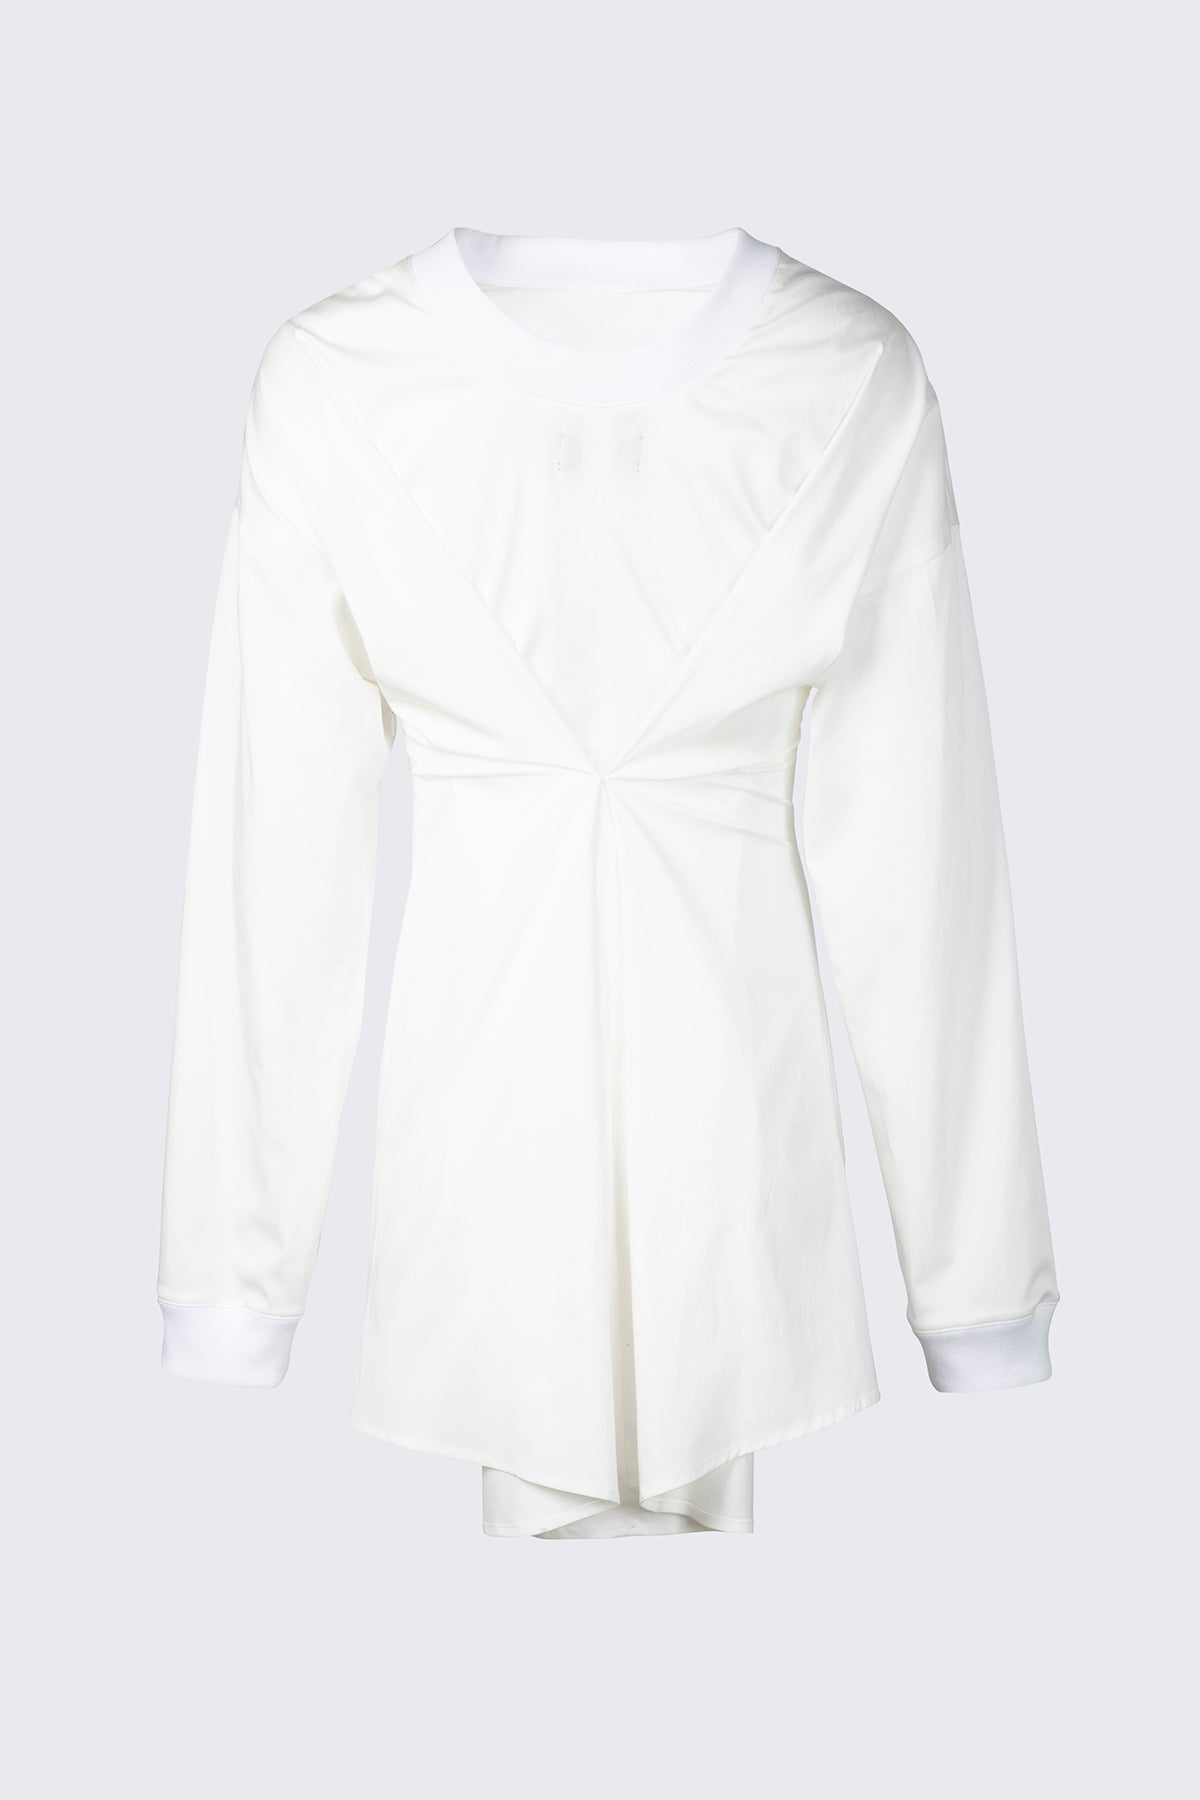 SHAUNA DRESS | WHITE